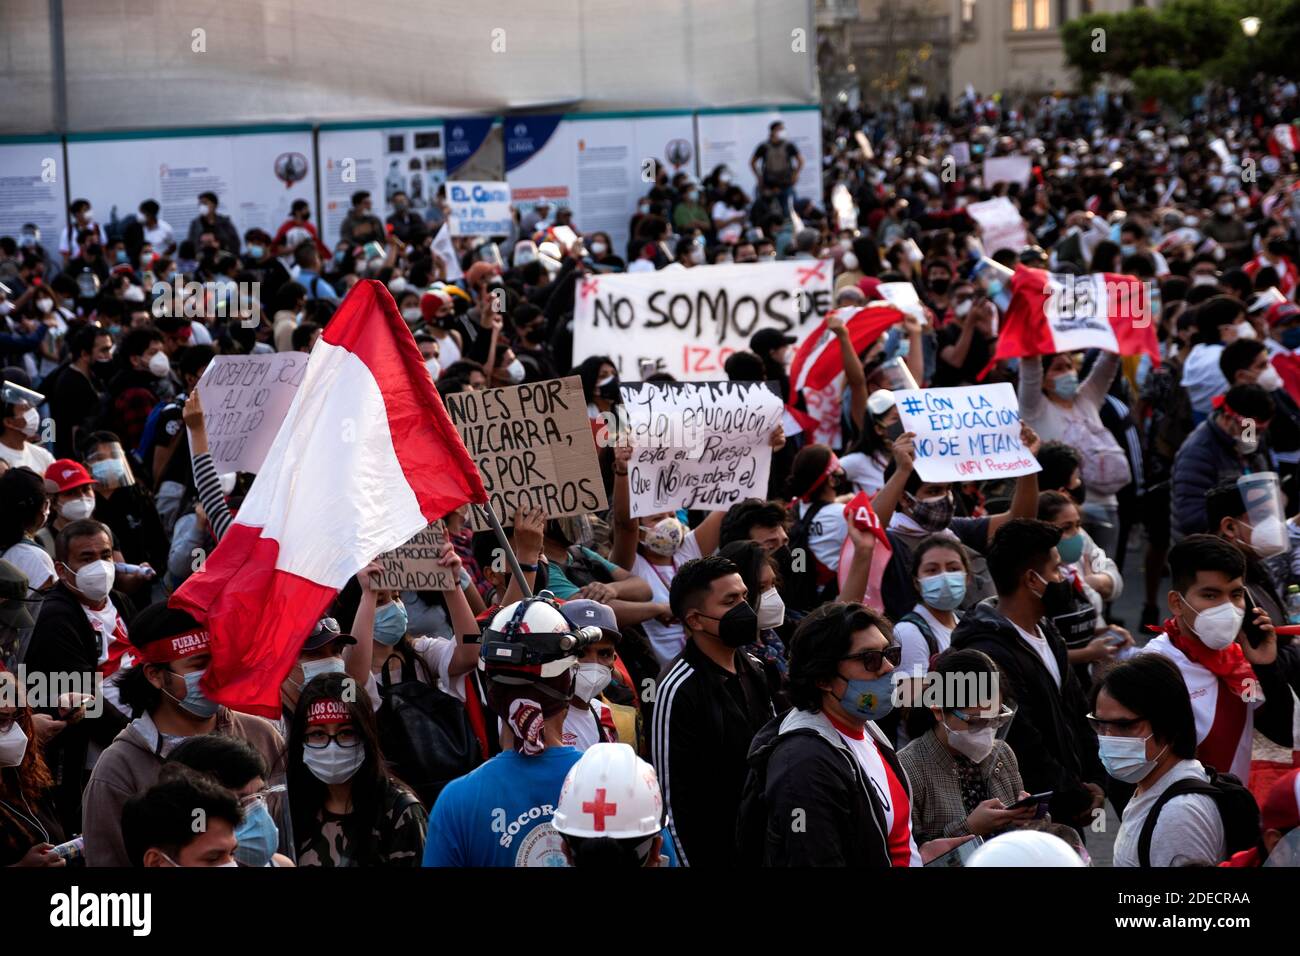 Marcha de Protesta. Lima, Peru - Protest March, Lima, Peru Stock Photo